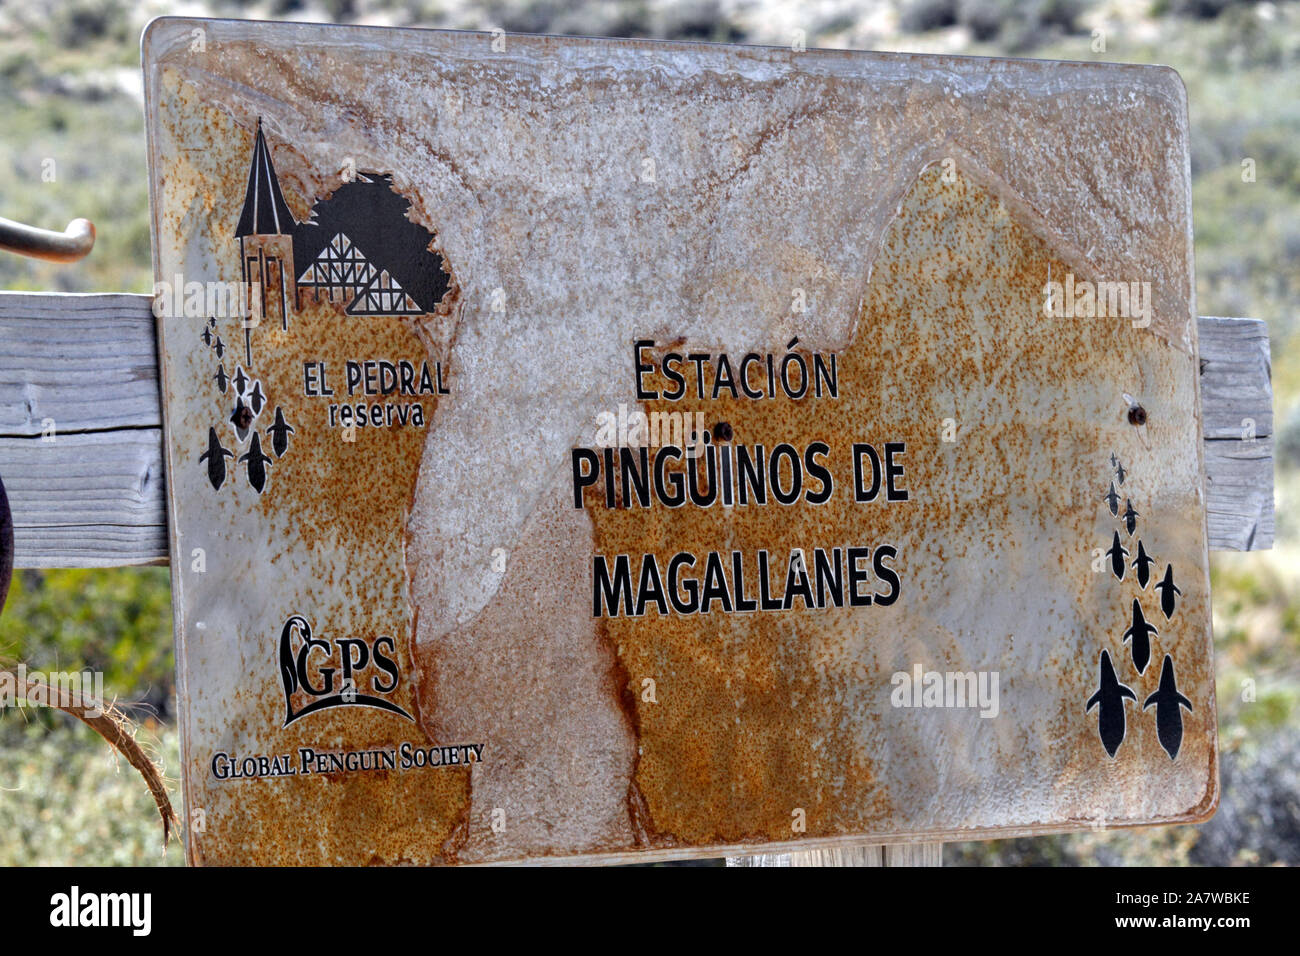 Pinguino globale della società. El Pedral, Magdallenes riserva. Foto Stock